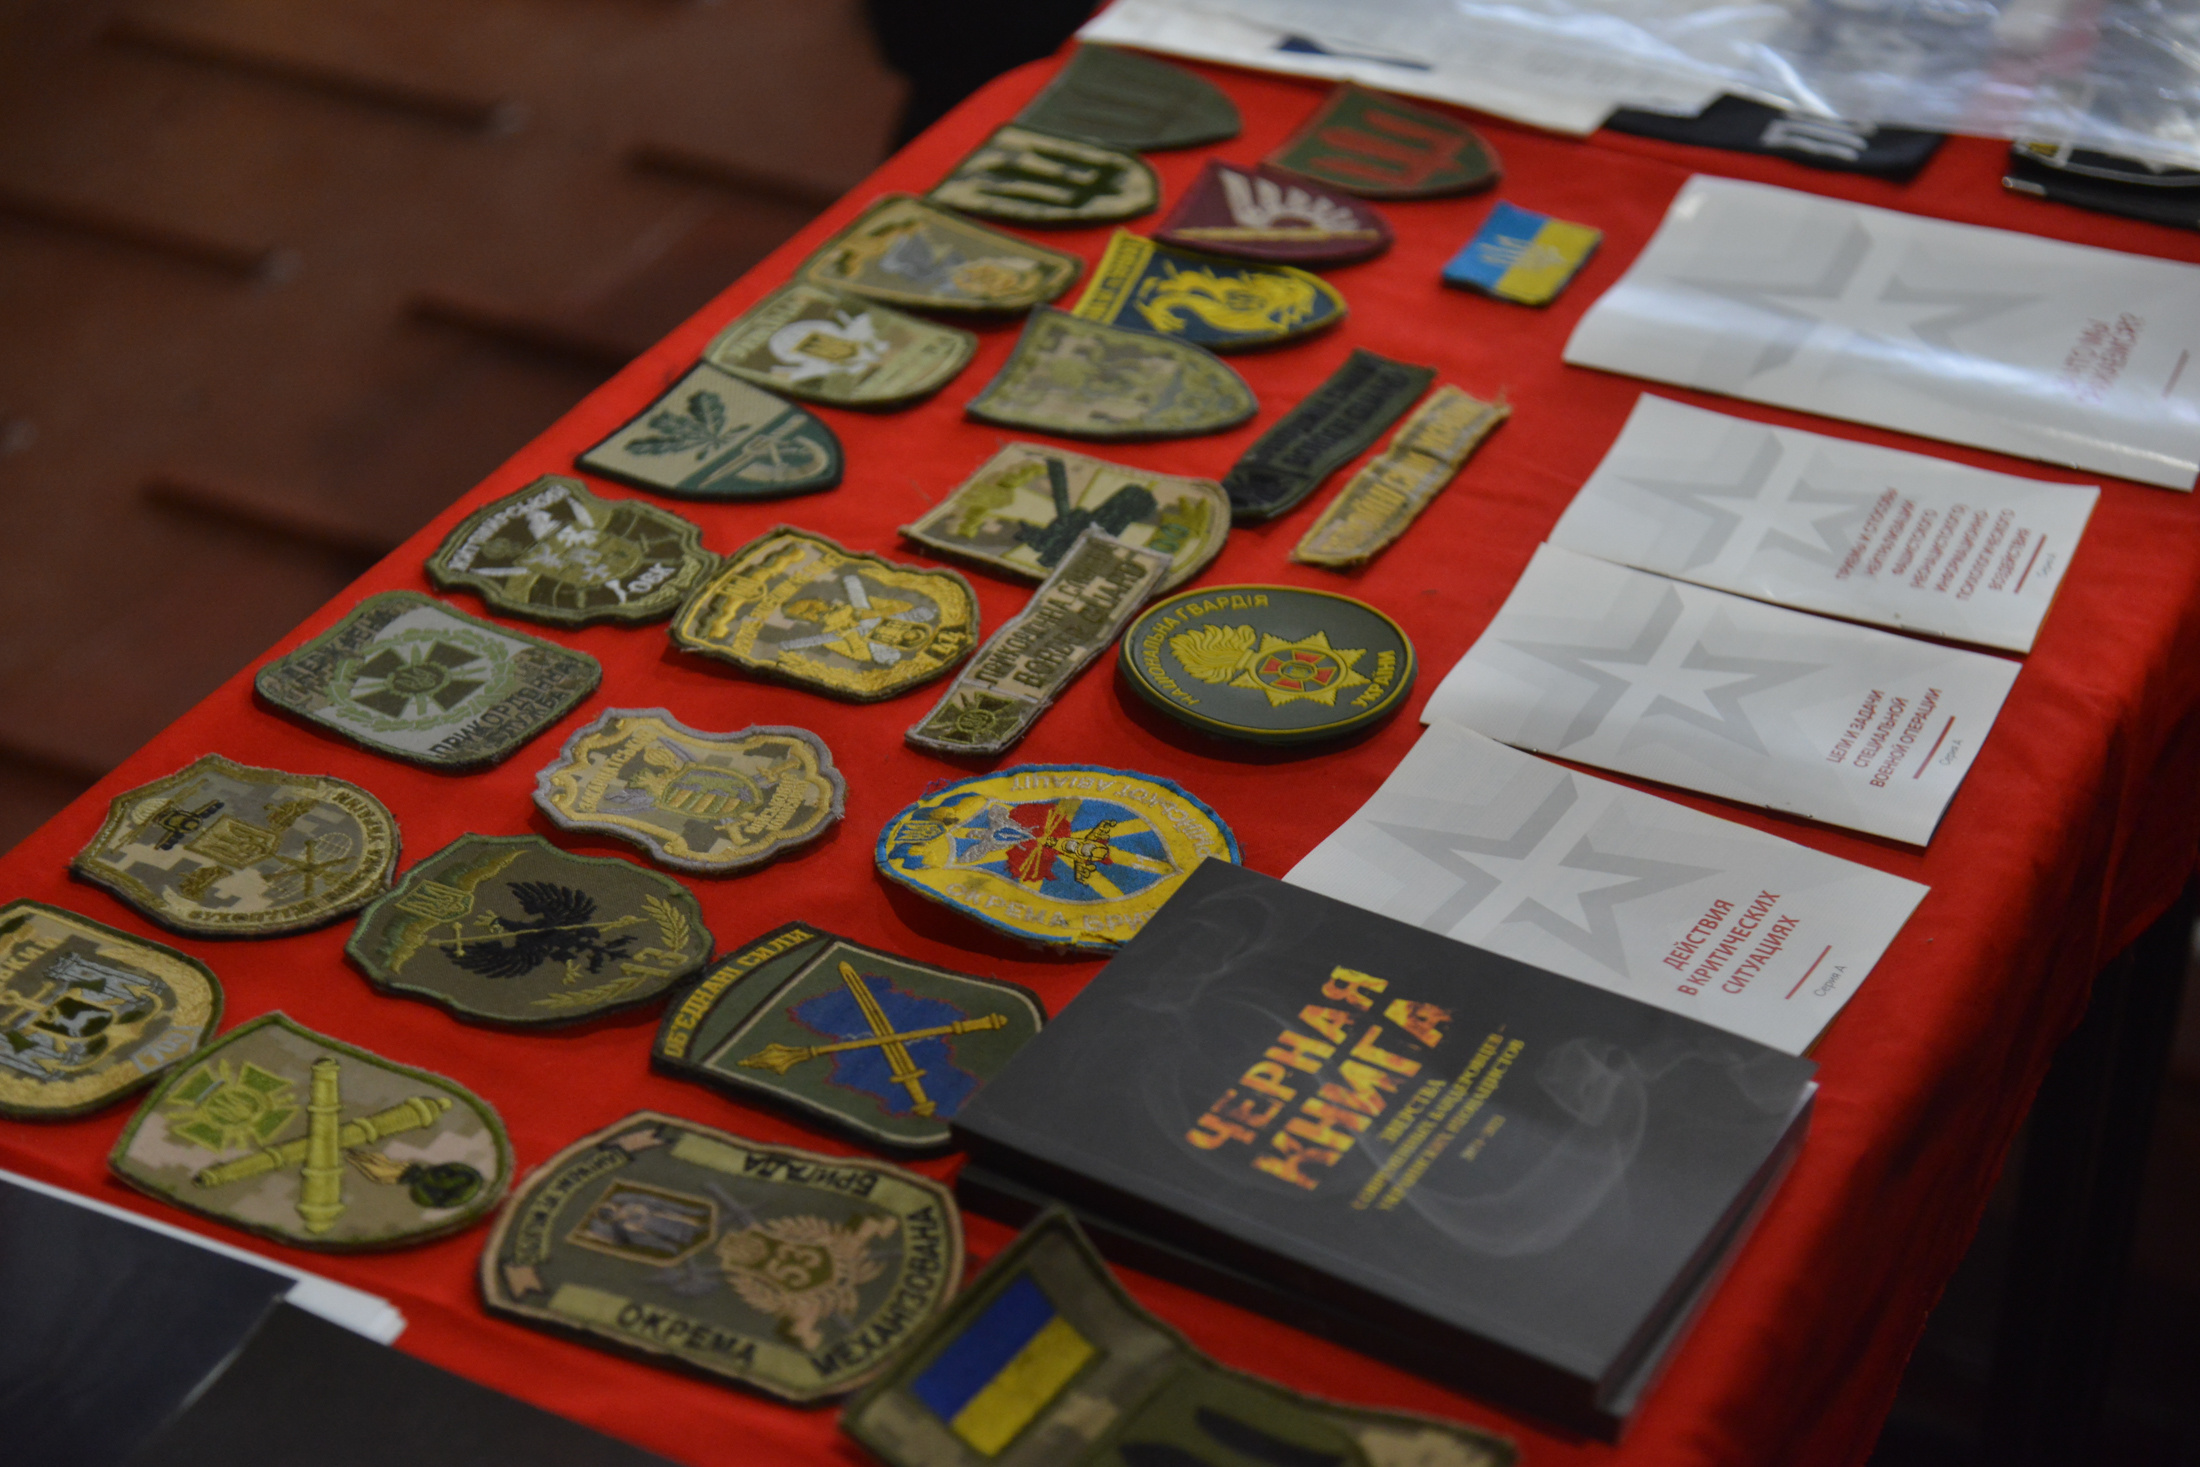 На выставке выложены образцы украинской символики вооруженных формирований: шевроны полиции, официальных войск Украины